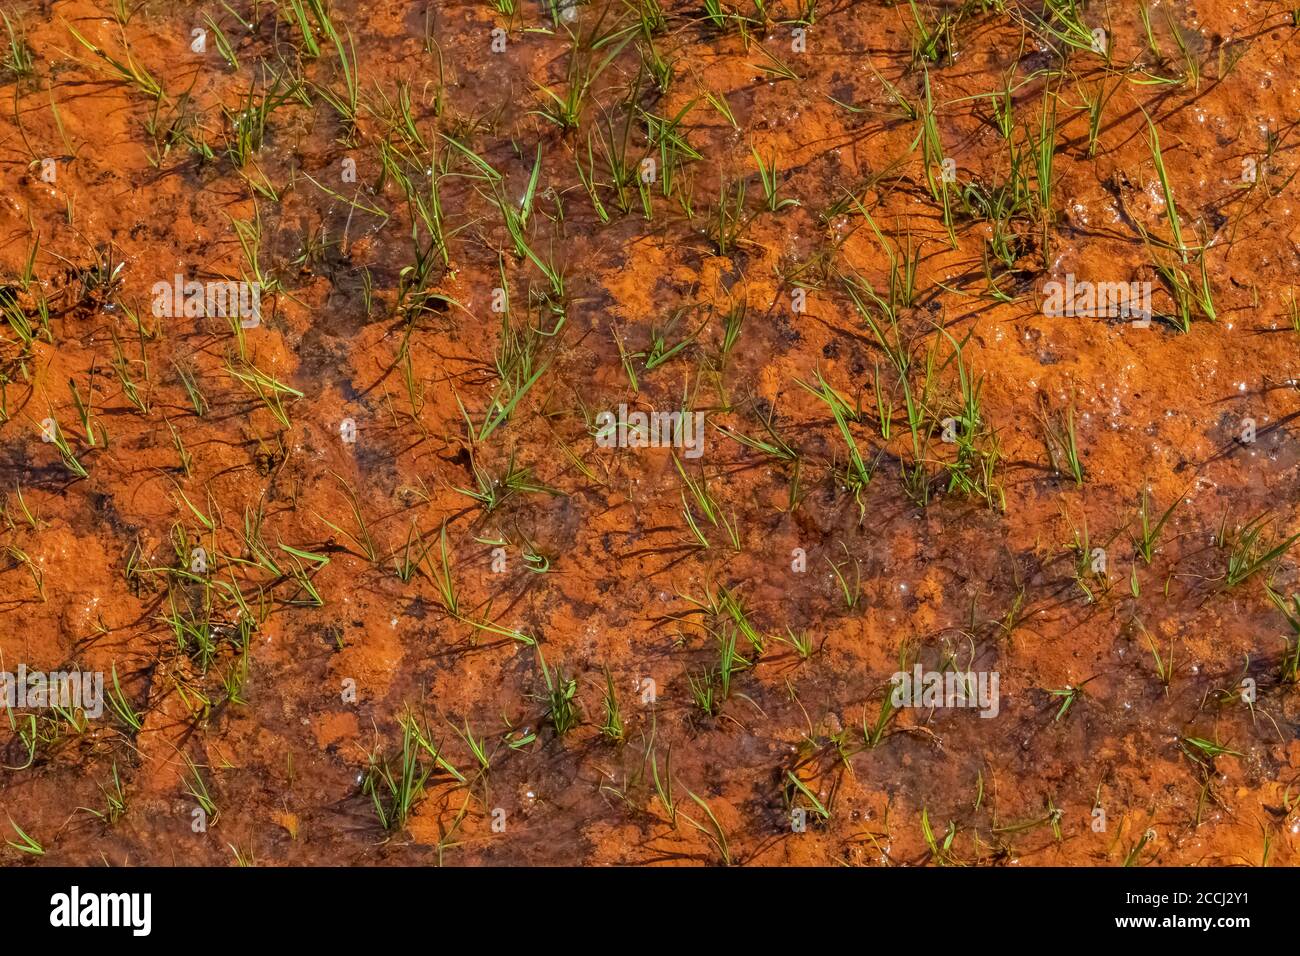 Microorganismos anaranjados, probablemente algas, en suelo que recientemente estaba bajo la nieve en la cuenca Cispus de la Goat Rocks Wilderness, Gifford Pinchot Nati Foto de stock